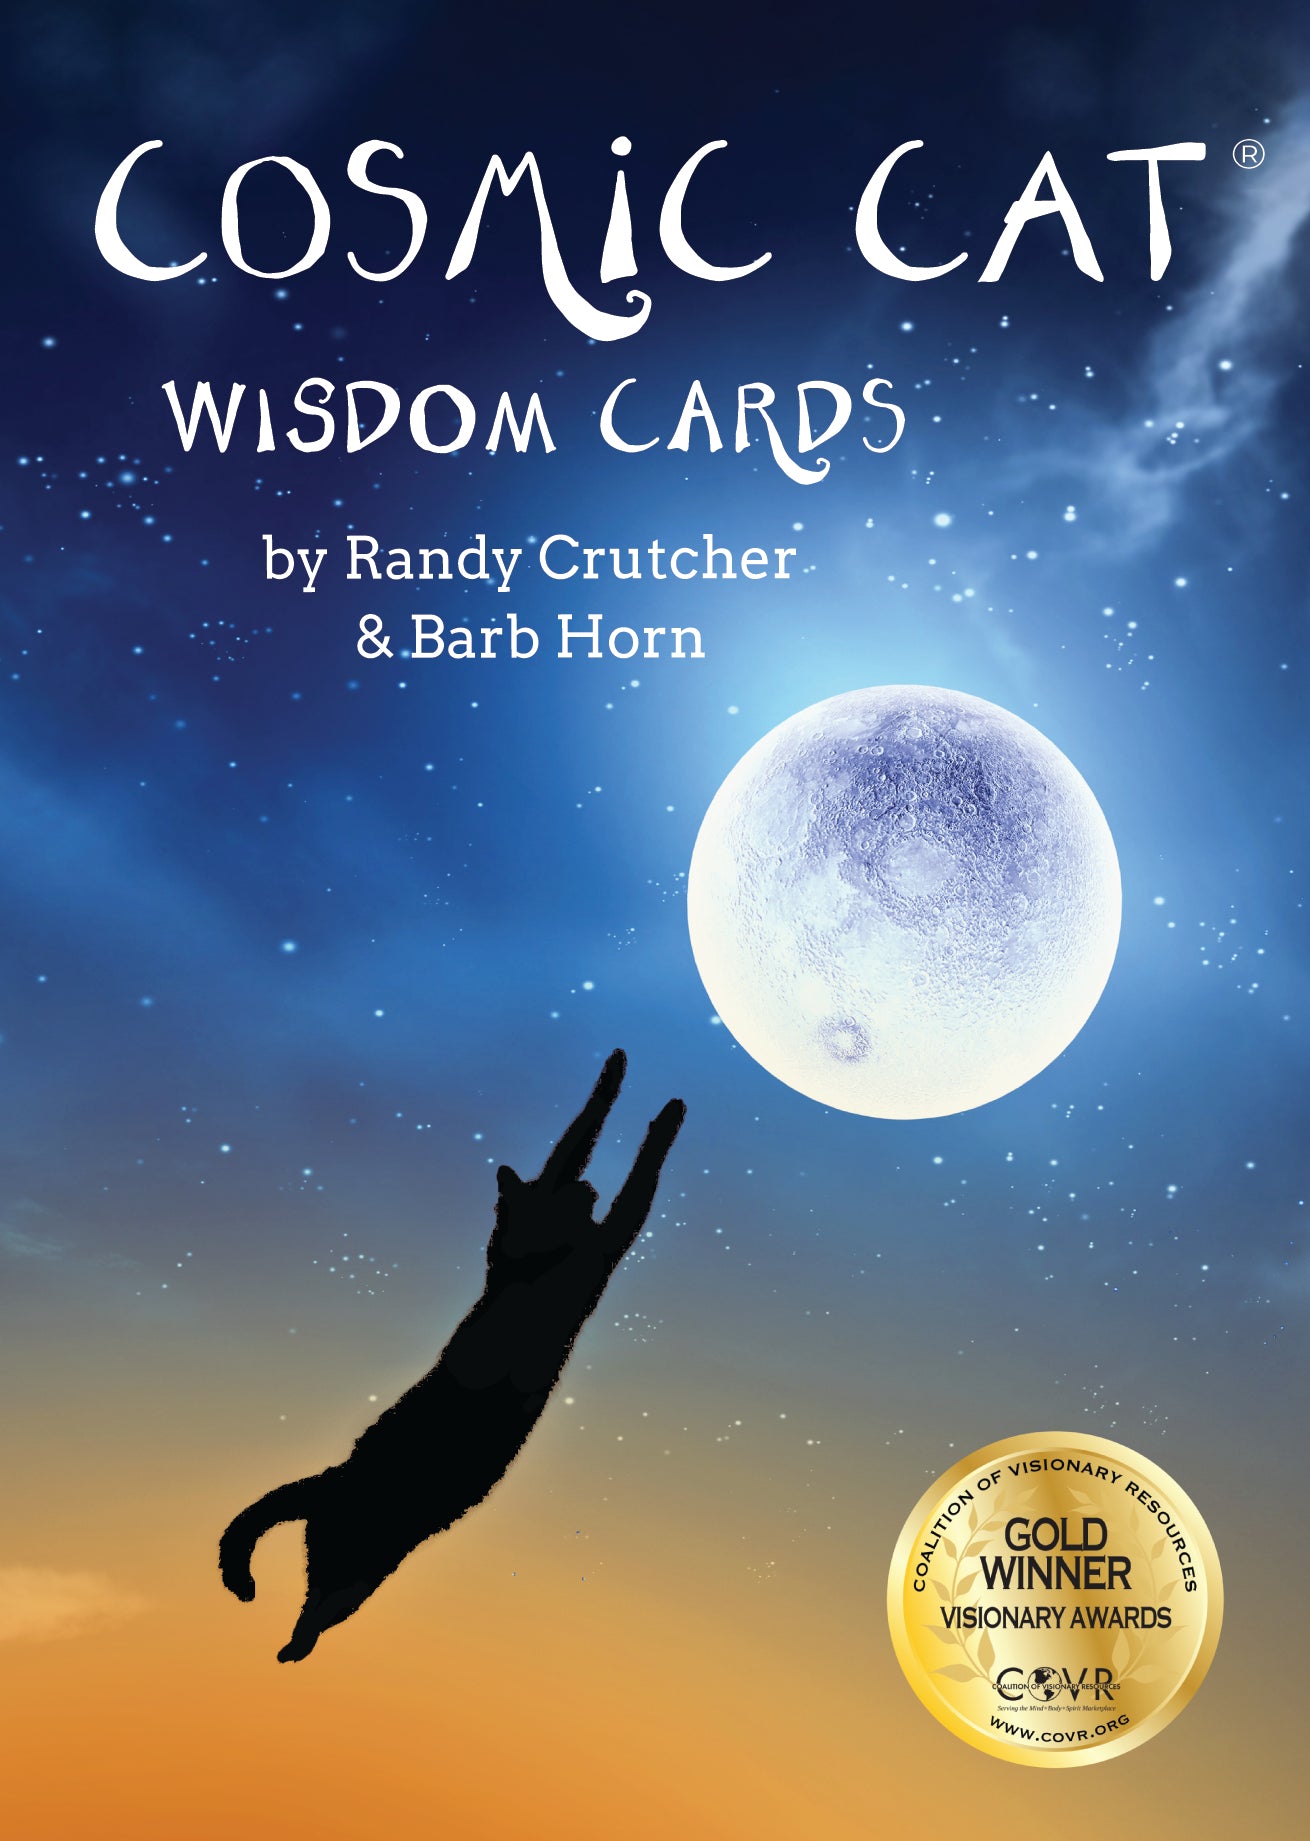 Cosmic Cat Wisdom Cards